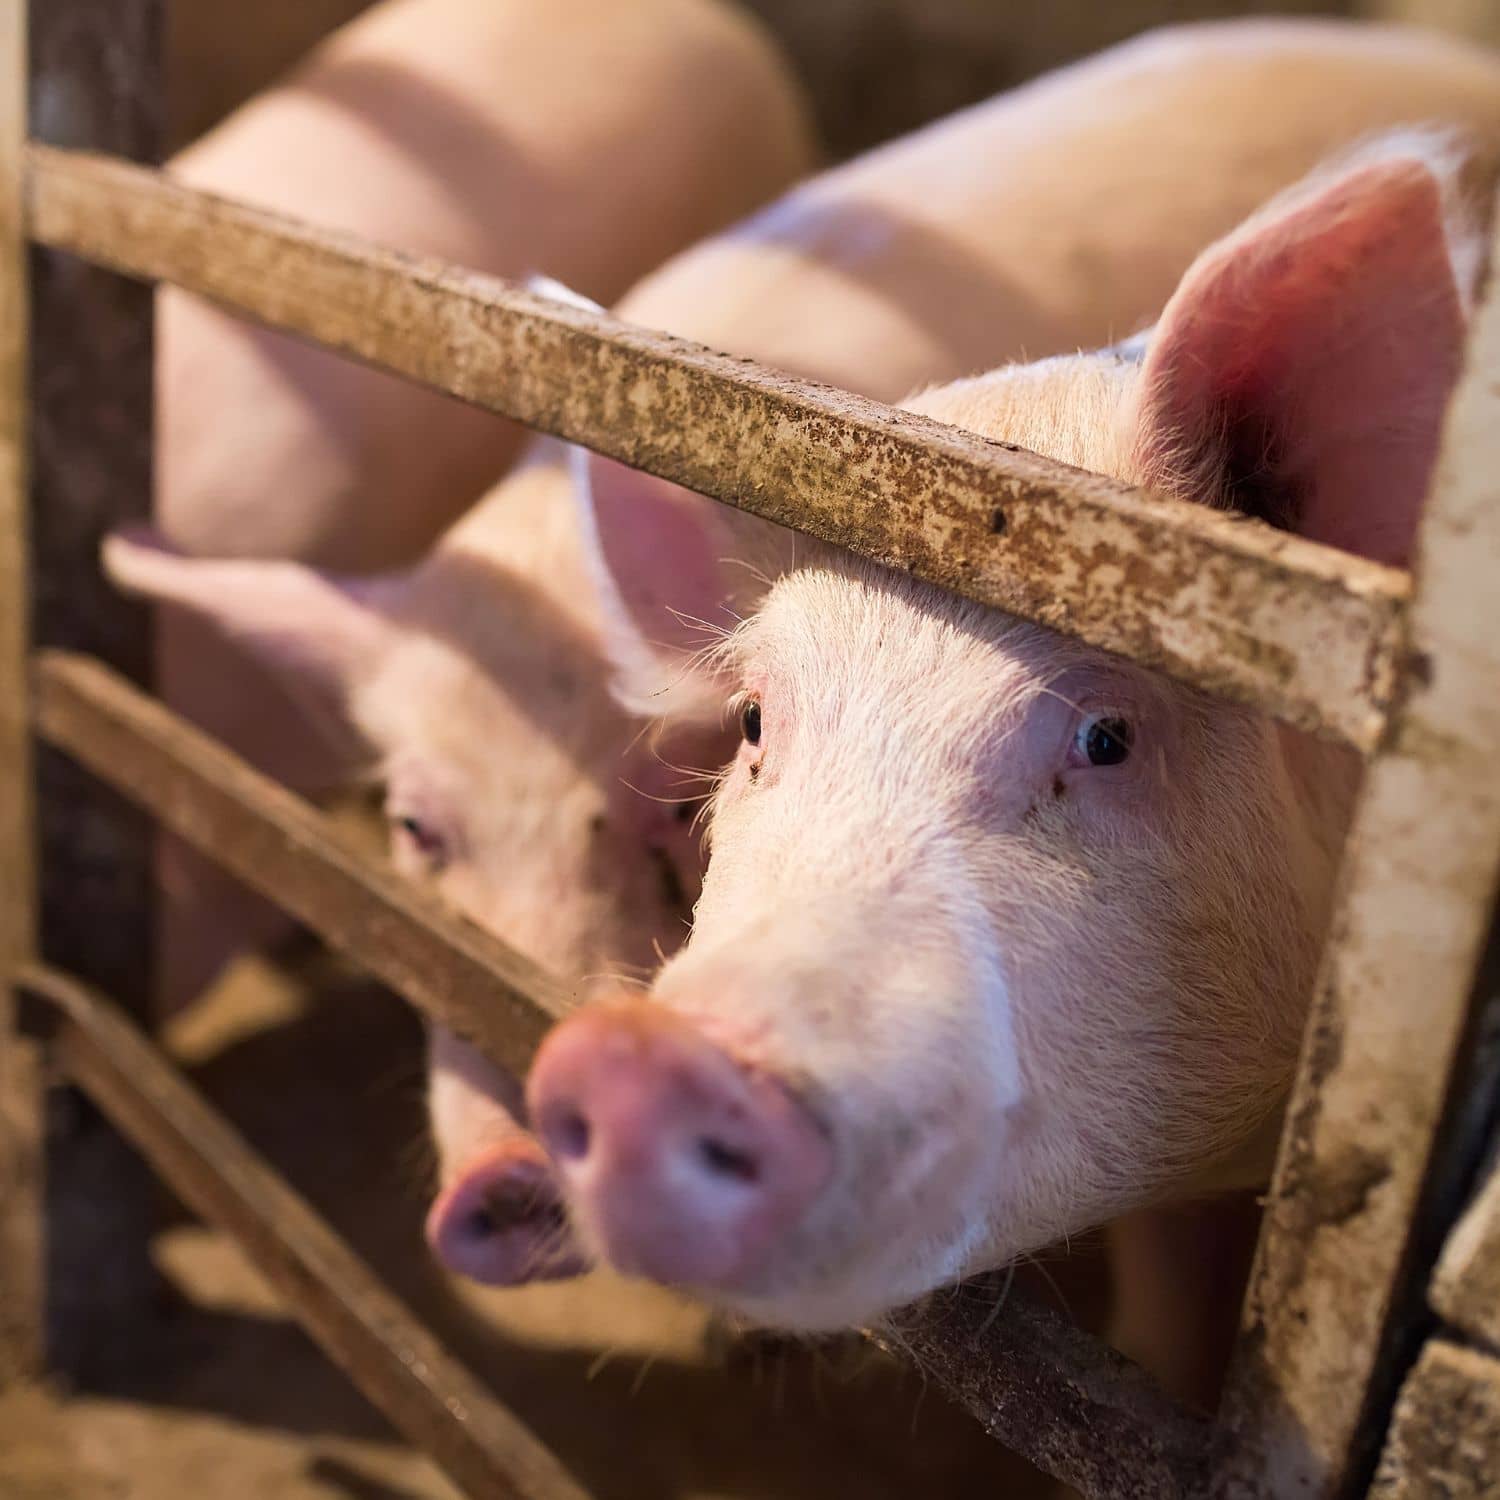 Un cerdo mira a la cámara a través de los barrotes de un corral de una granja industrial.